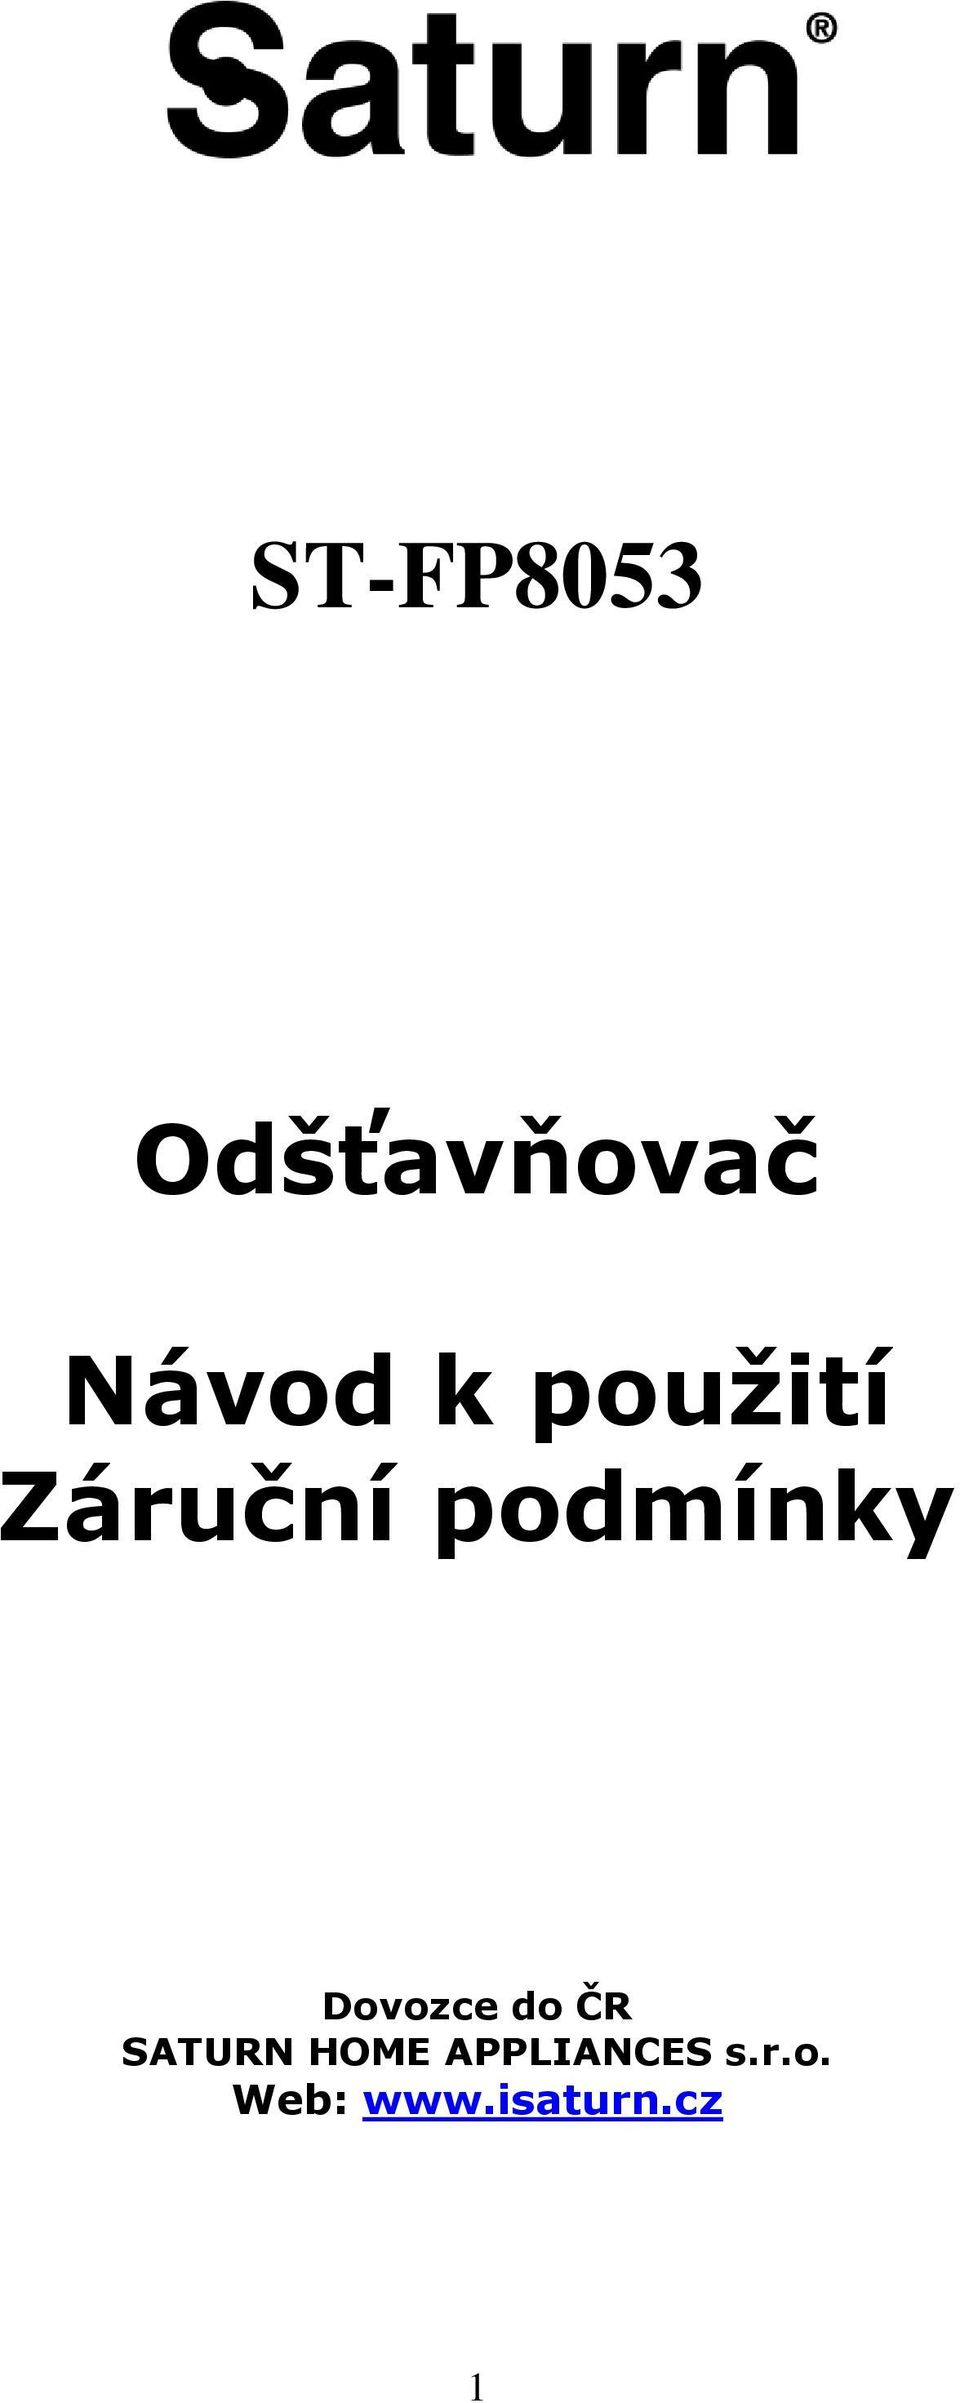 Dovozce do ČR SATURN HOME